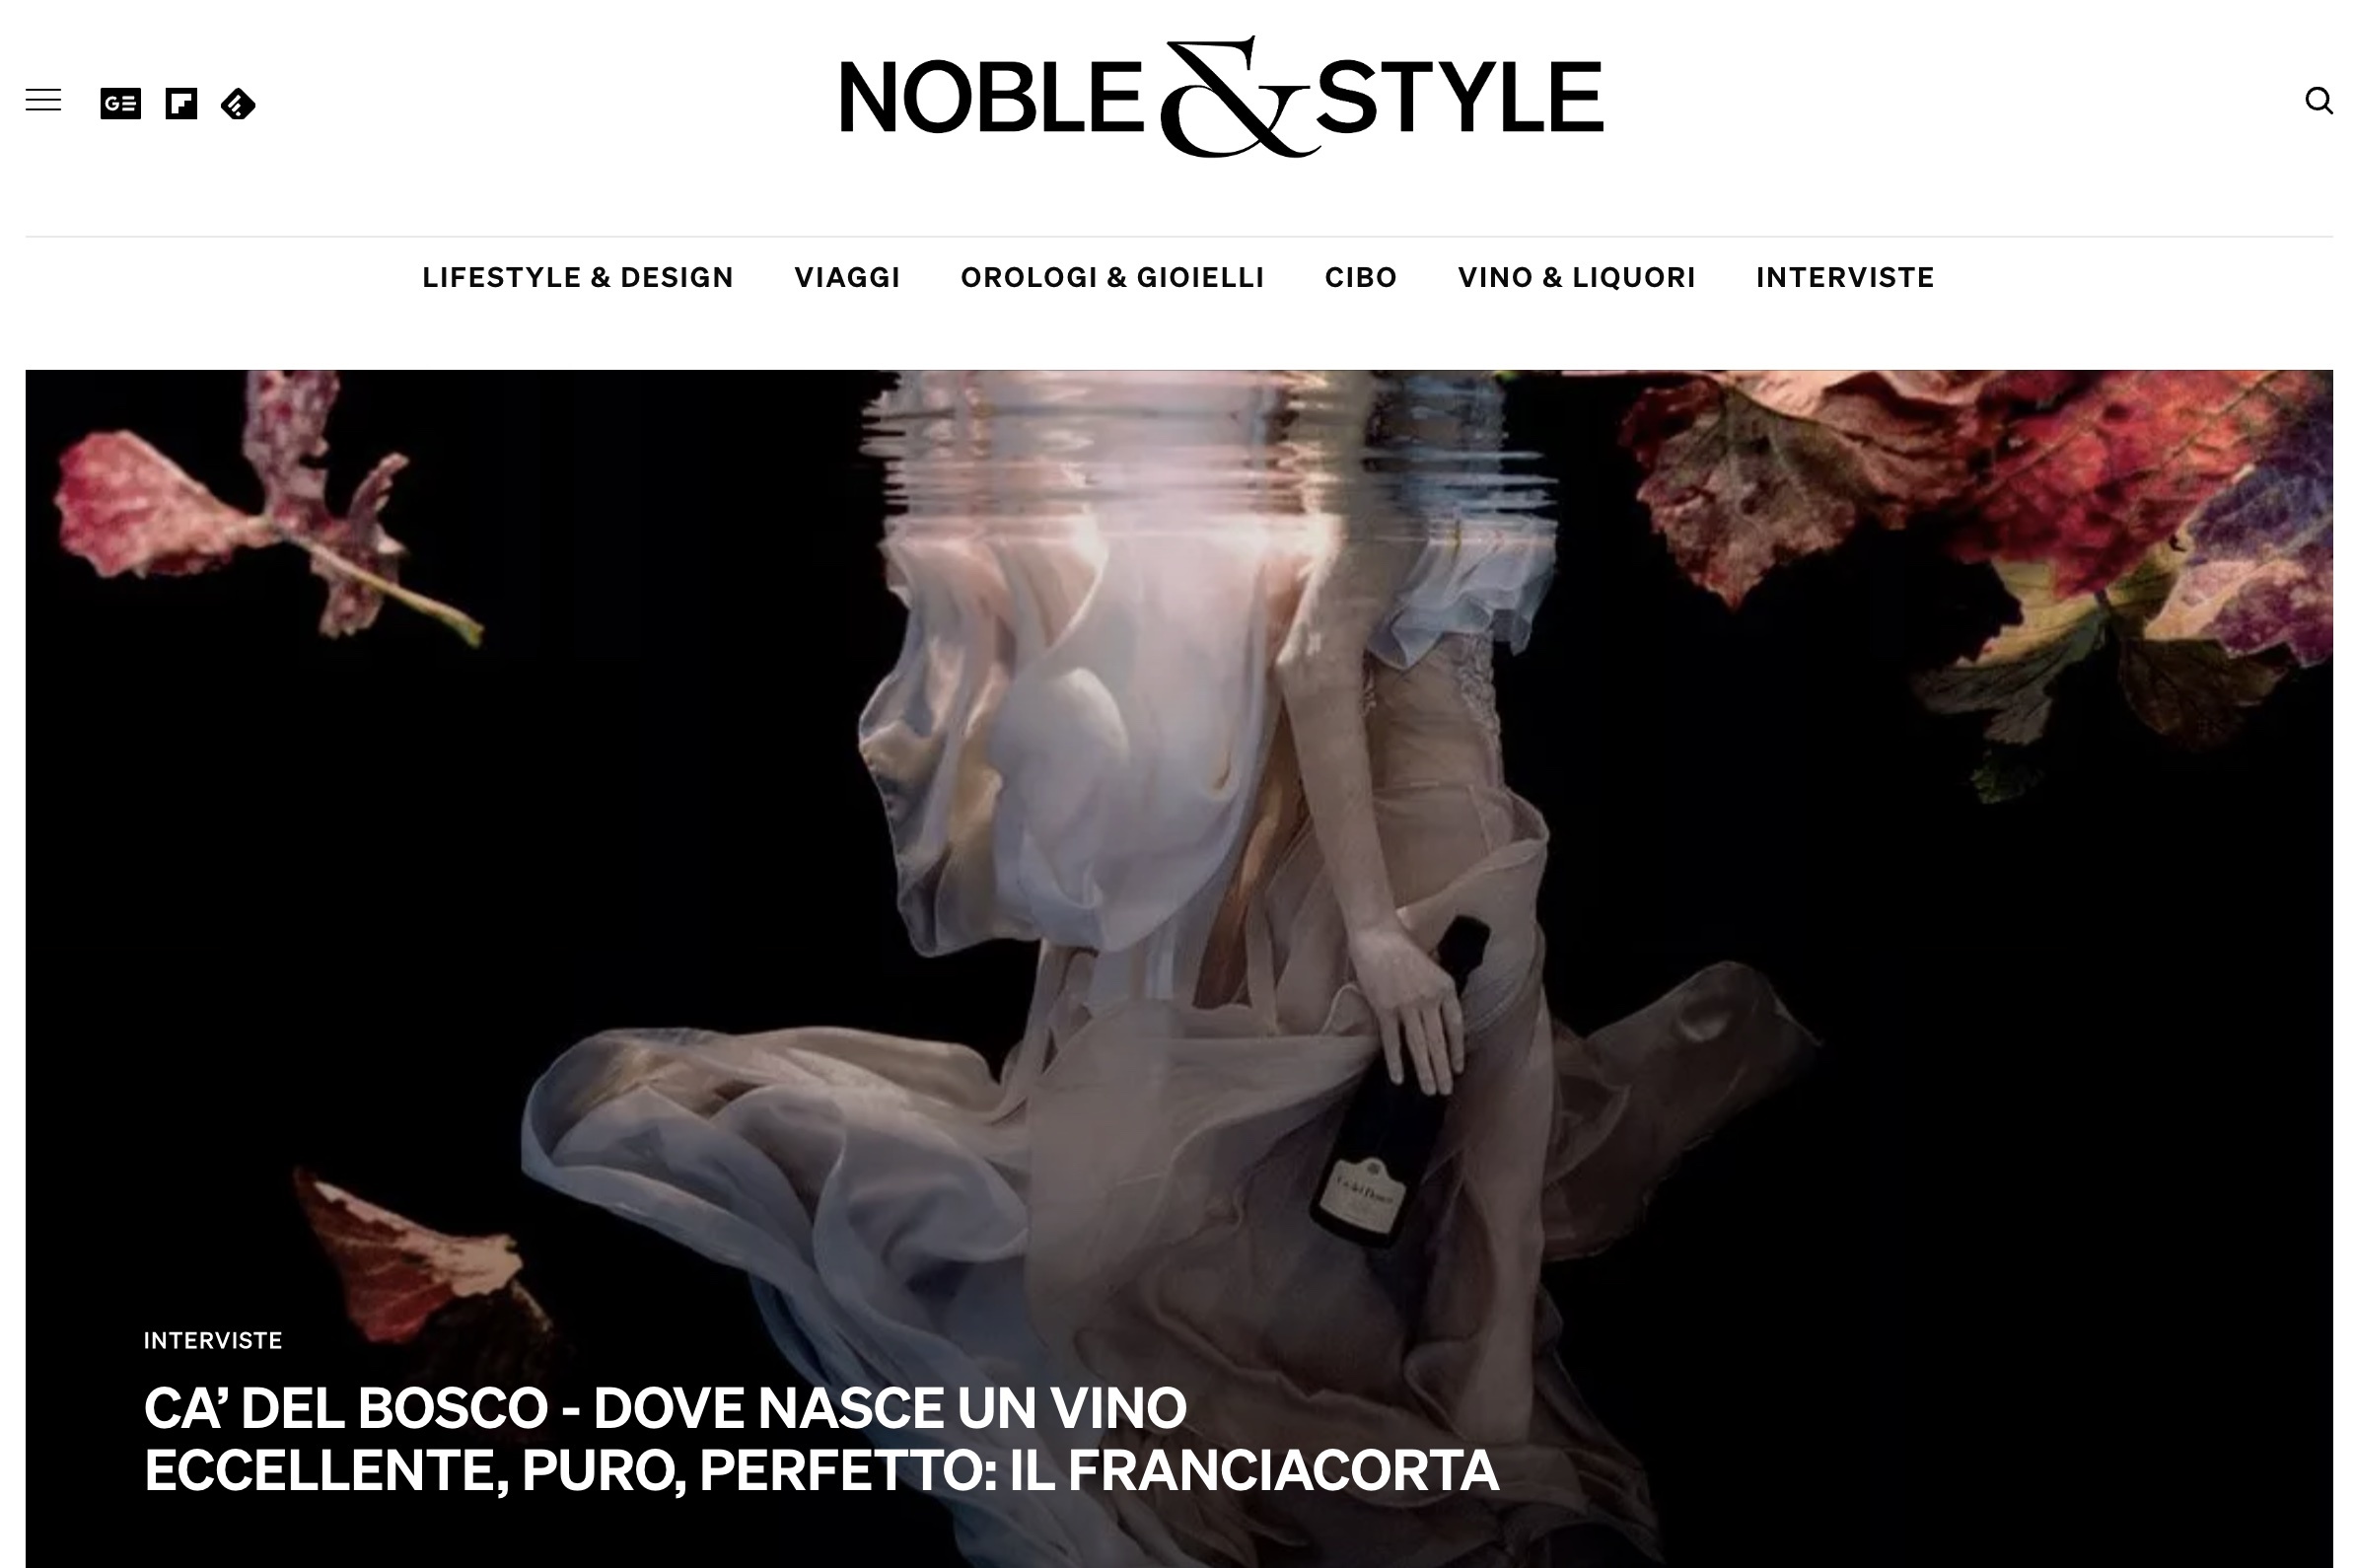 Foto 2 - La rivista NOBLE & STYLE premiata tra i migliori media internazionali di lusso